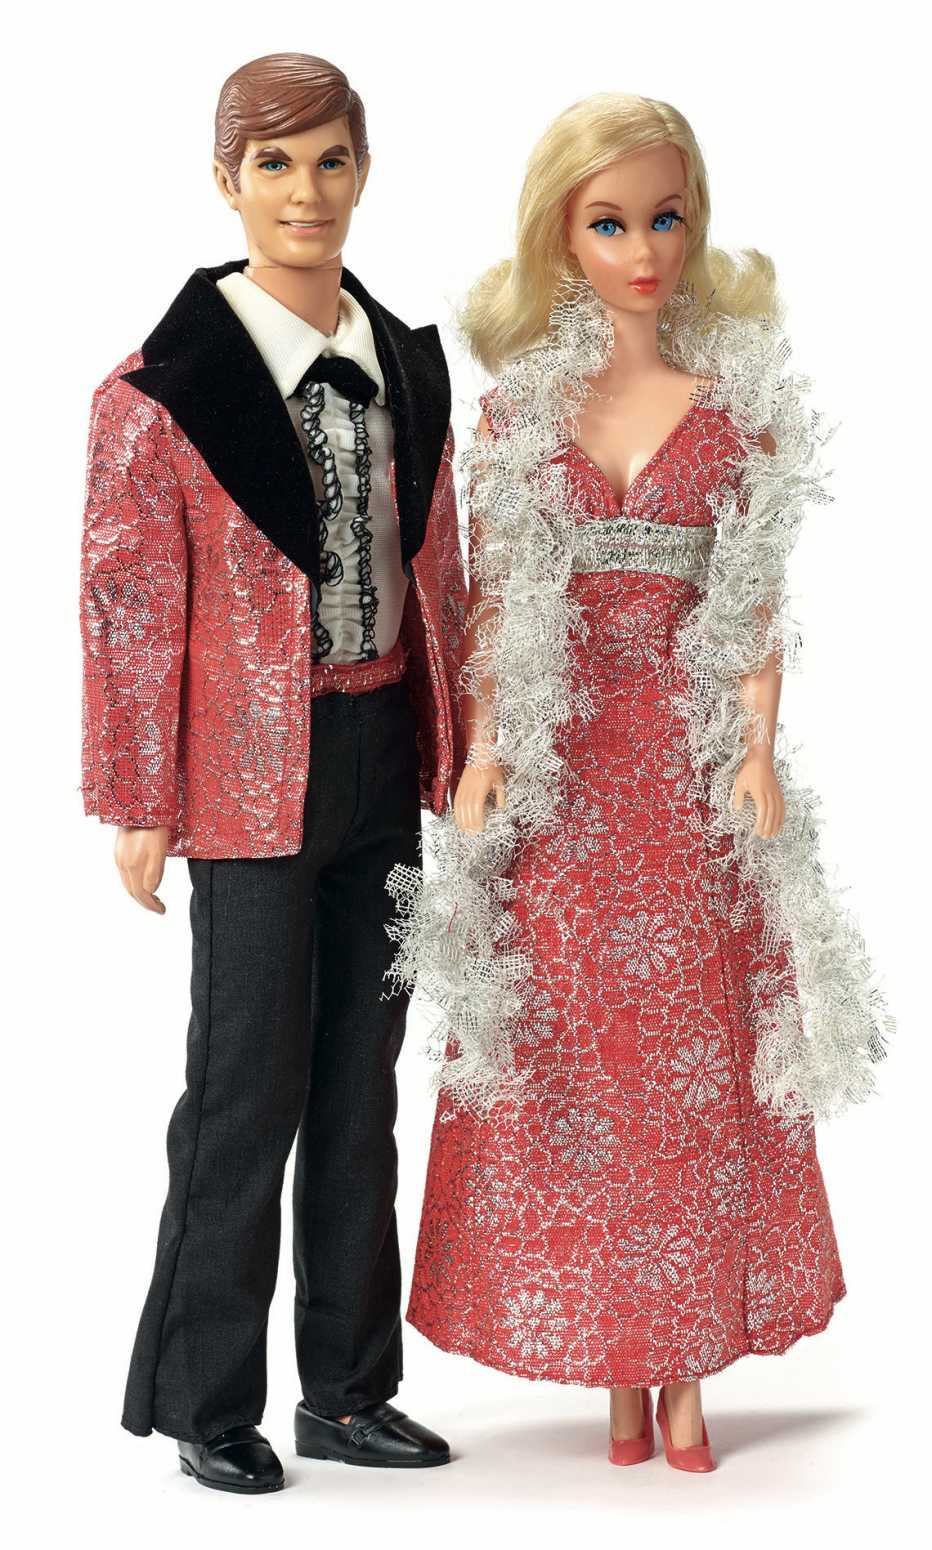 Muñecos Ken y Barbie.